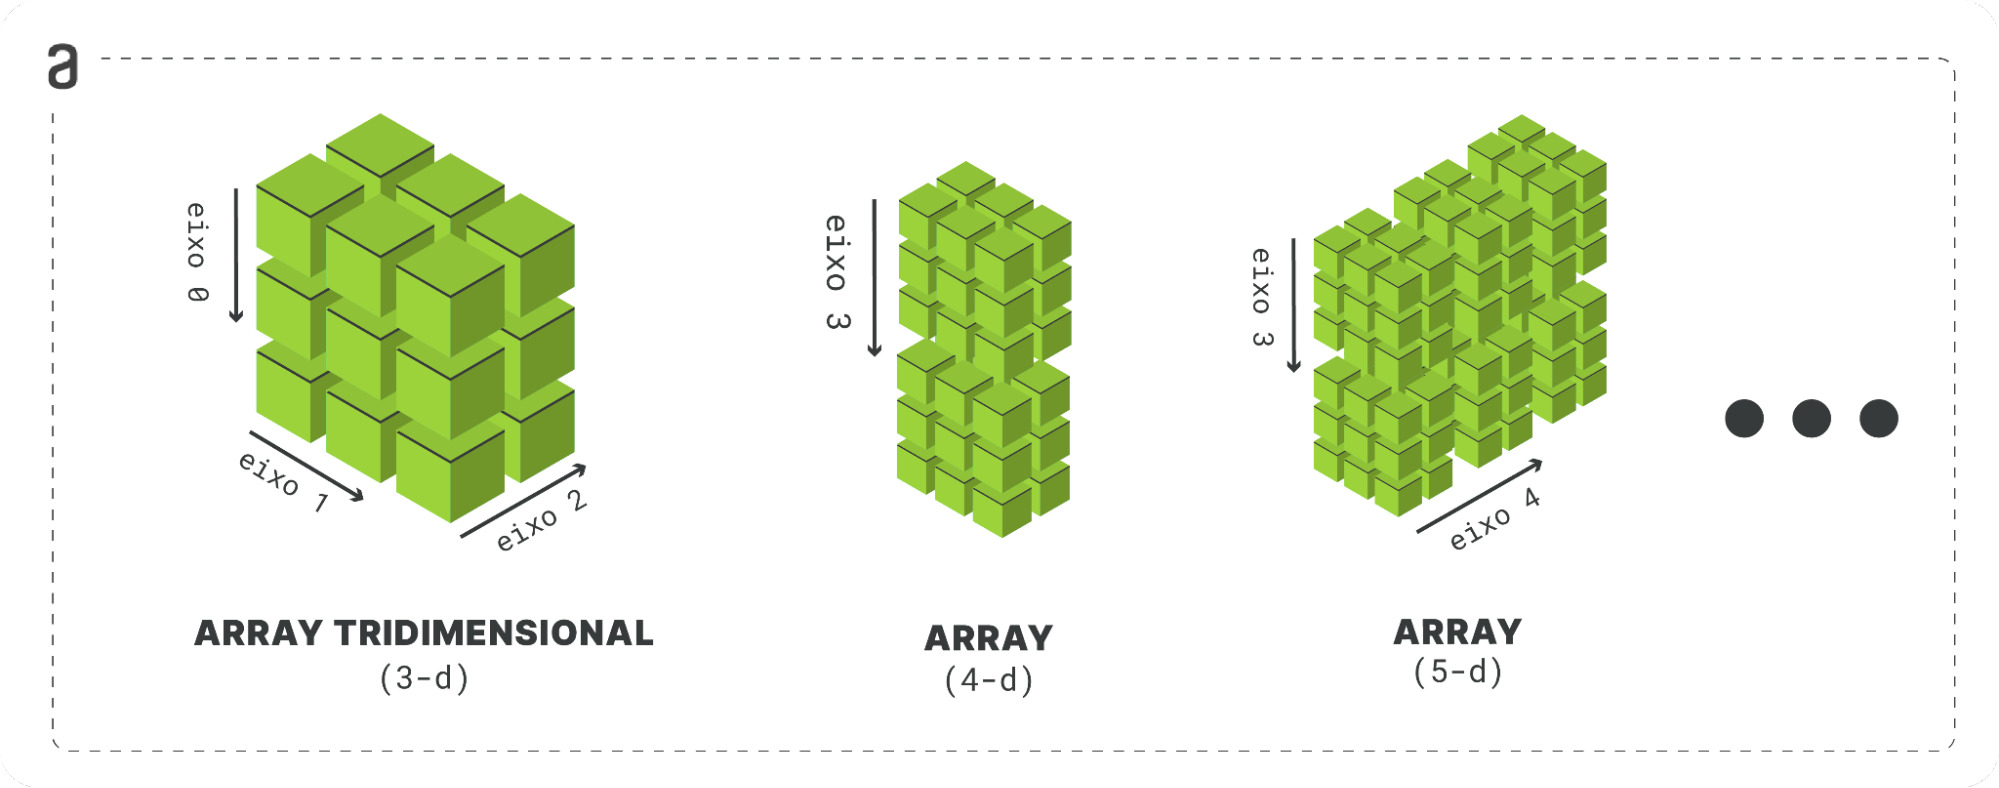 Figura com fundo branco mostrando três arrays, cada um com um número de dimensões diferentes. O primeiro array, da esquerda para direta, possui três dimensões. O segundo array possui 4 dimensões, sendo exemplificado como a composição de dois arrays tridimensionais, um sobre o outro; temos uma nova dimensão que pode ser formada por "n" arrays tridimensionais em sequência. O terceiro array possui 5 dimensões, sendo mostrado como a combinação de 6 arrays tridimensionais, nesse caso temos duas dimensões, cada uma formada por uma sequência de arrays tridimensionais.